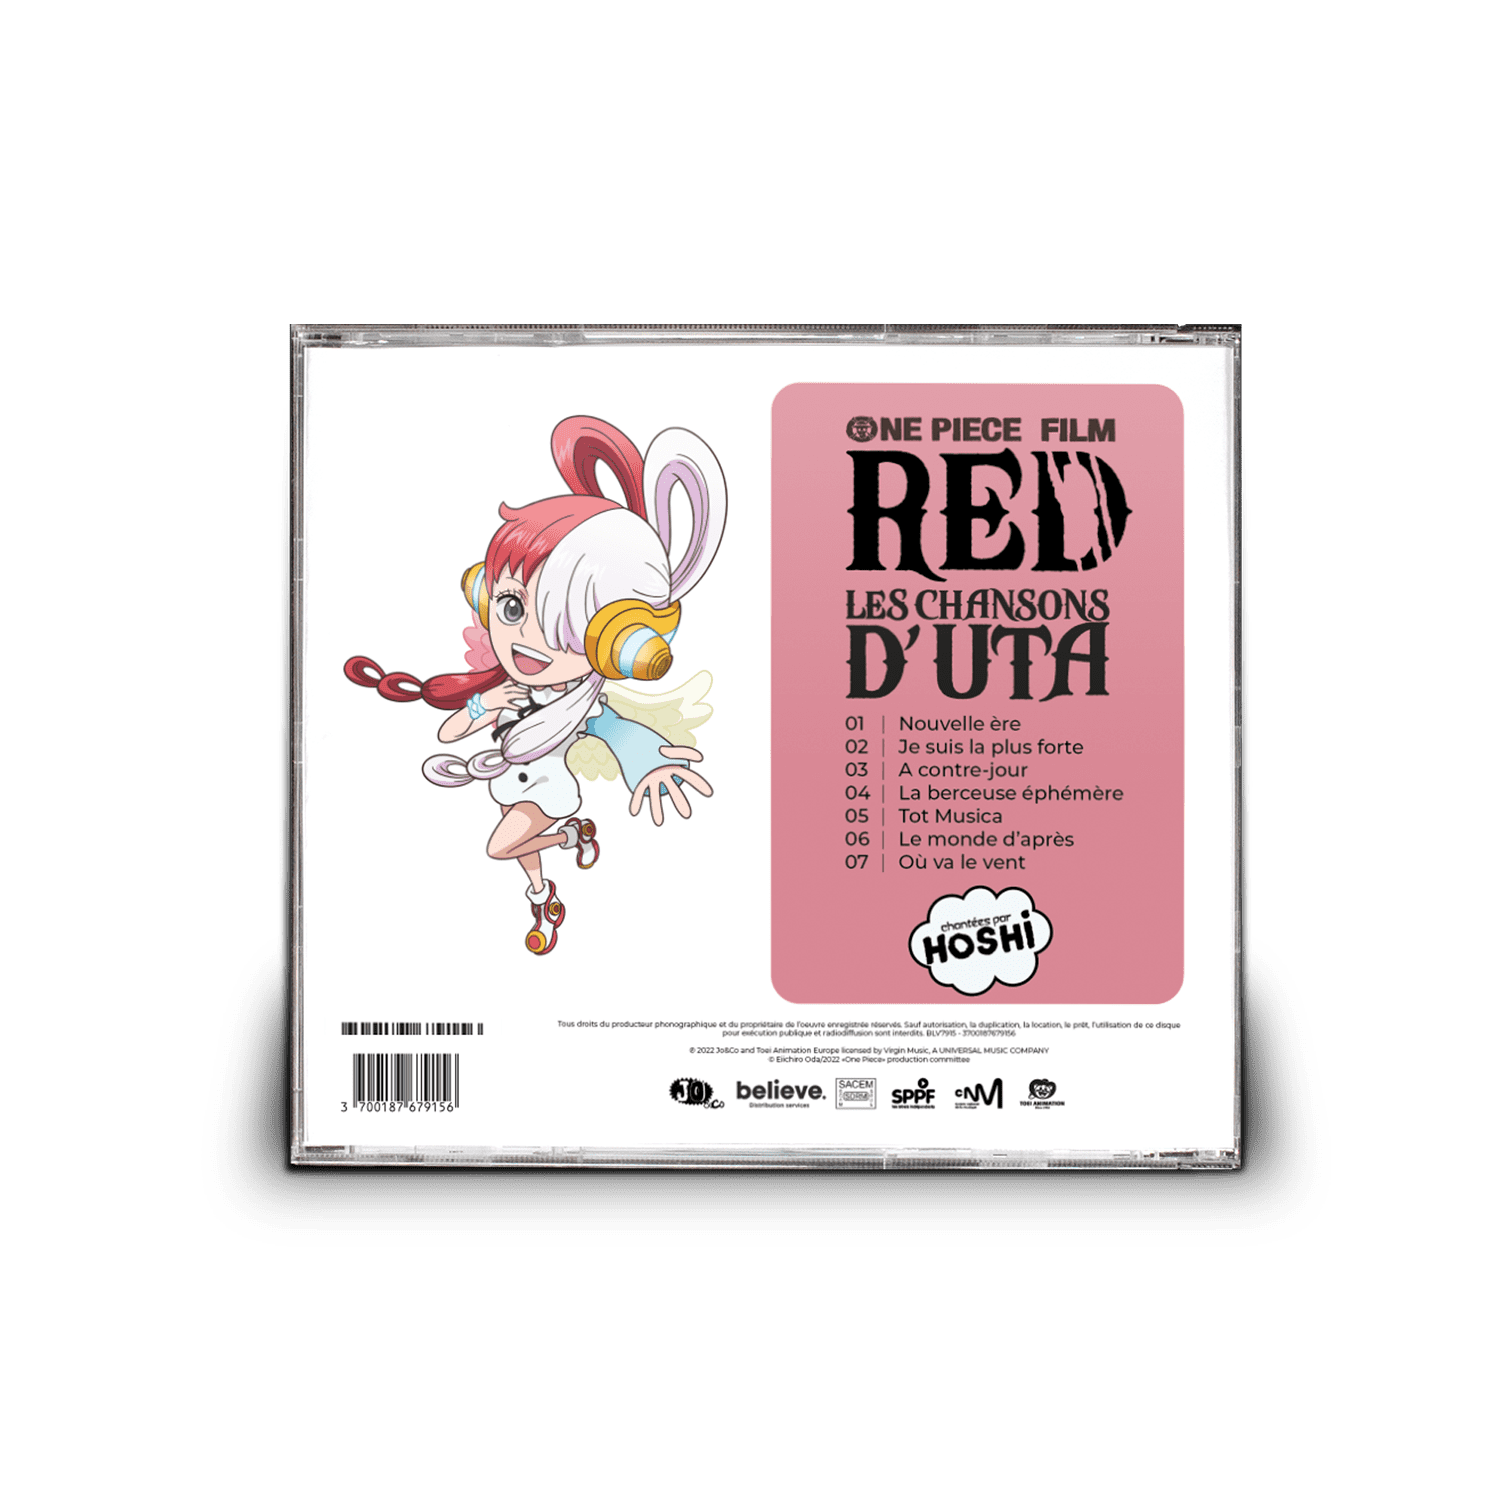 One Piece Film - Red : Les chansons d'Uta : Hoshi - Vinyles variété  française